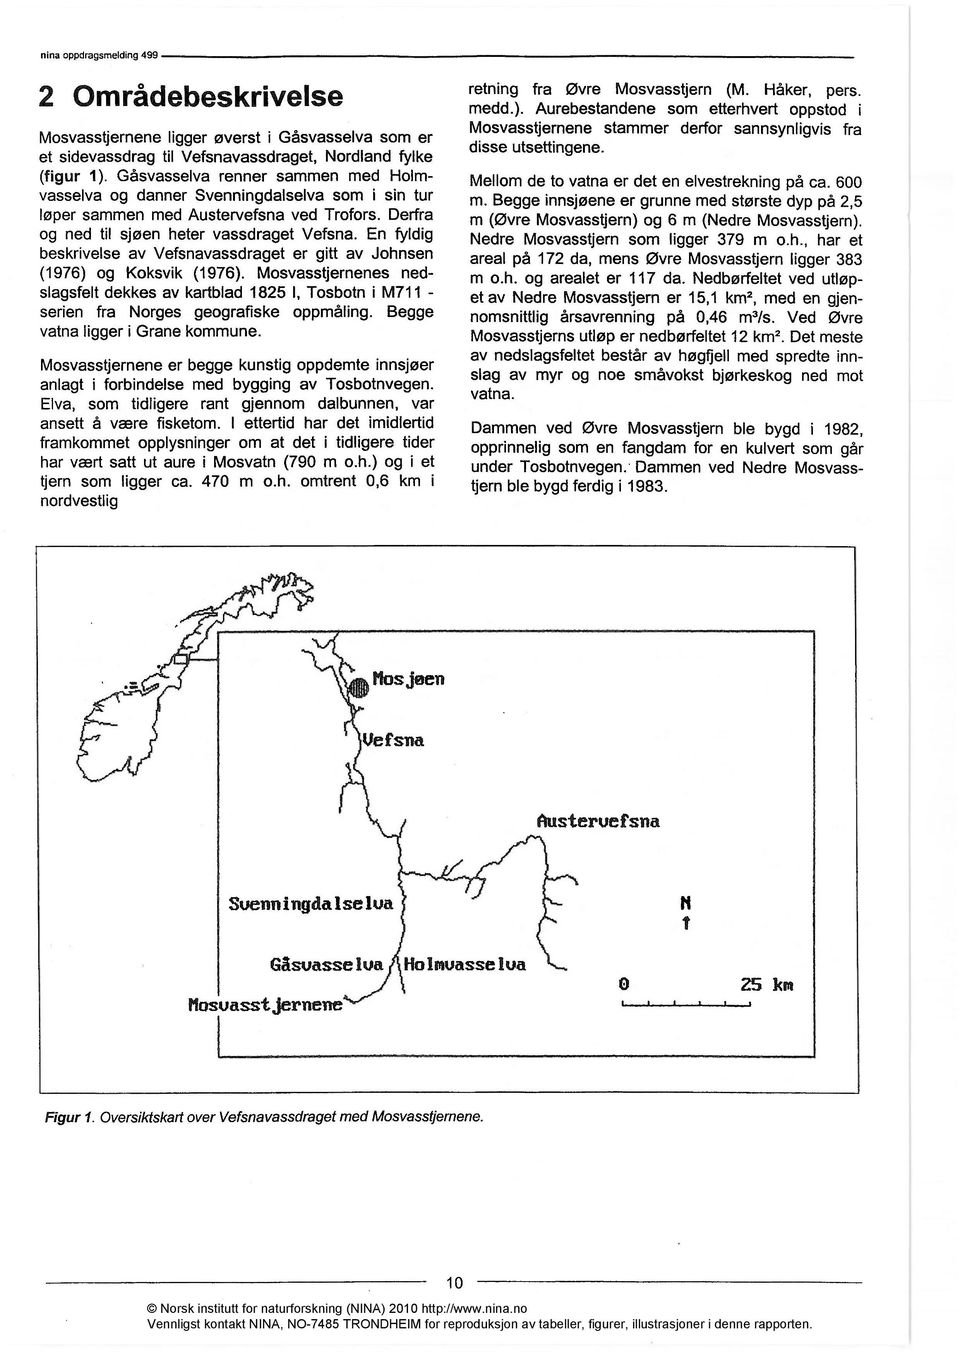 En fyldig beskrivelse av Vefsnavassdraget er gitt av Johnsen (1976) og Koksvik (1976).